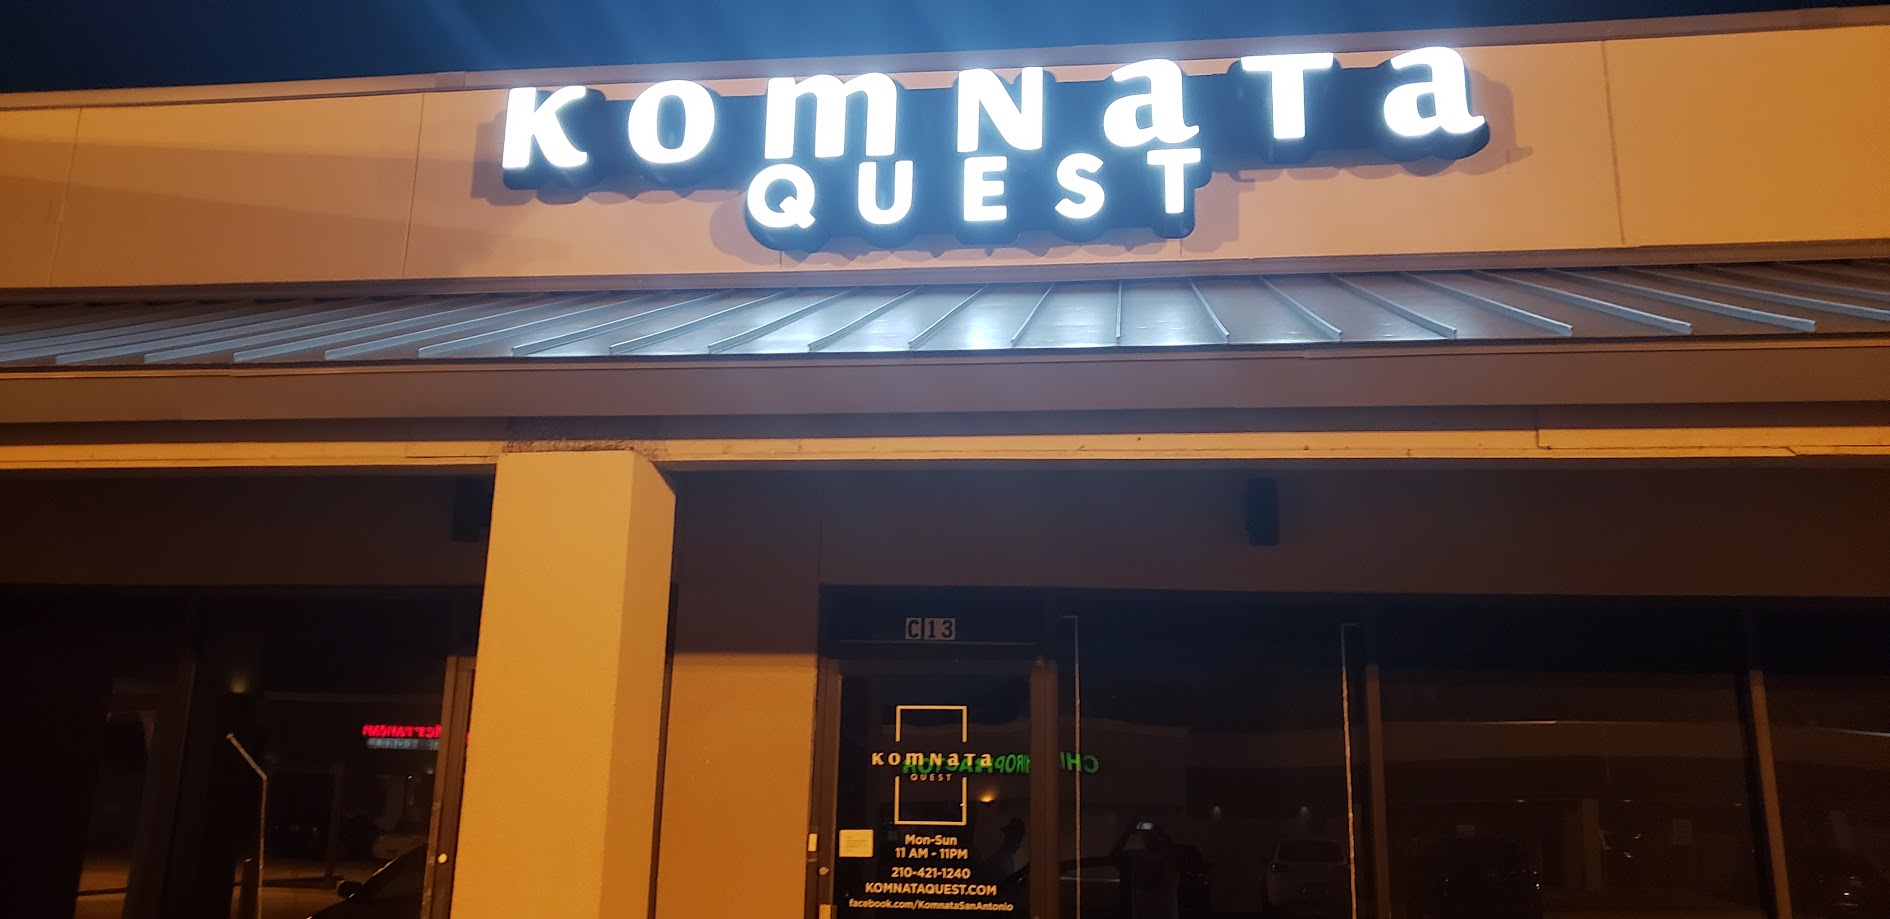 Komnata Quest Escape Room